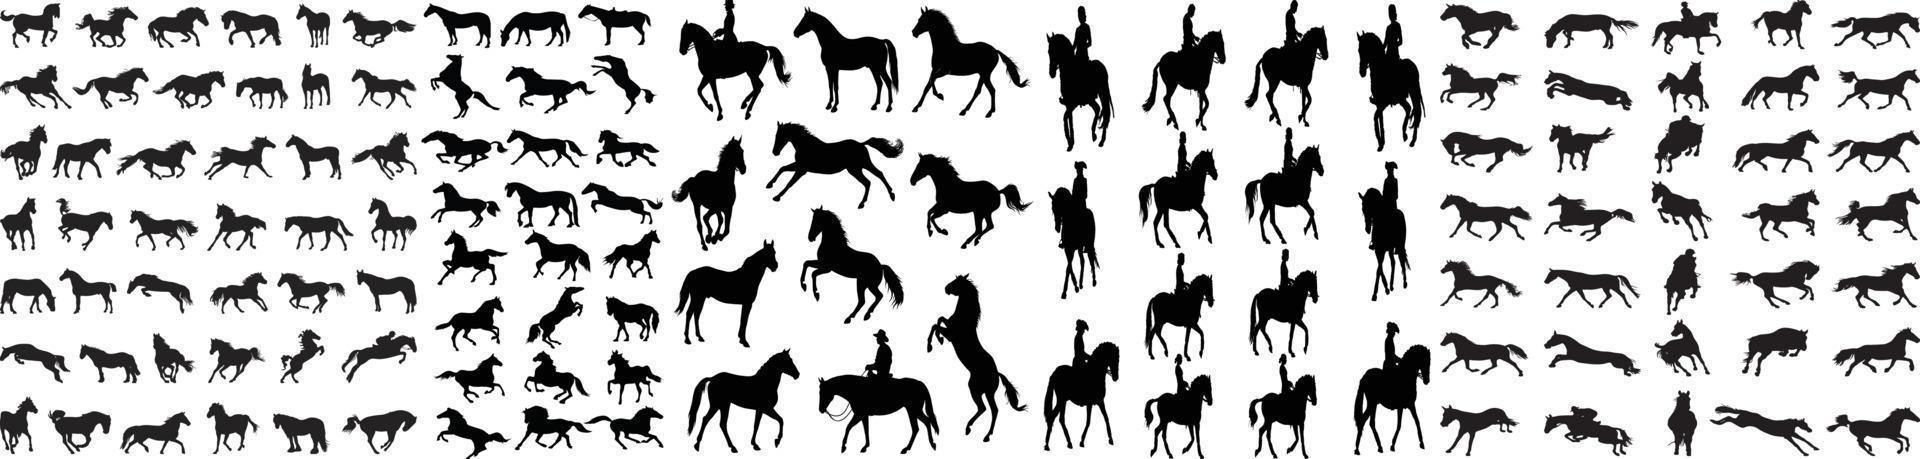 collectie van paard silhouet, geïsoleerd, vector, paard silhouet, paard icon set, paarden silhouet set vector illustratie, collectie van paard silhouette